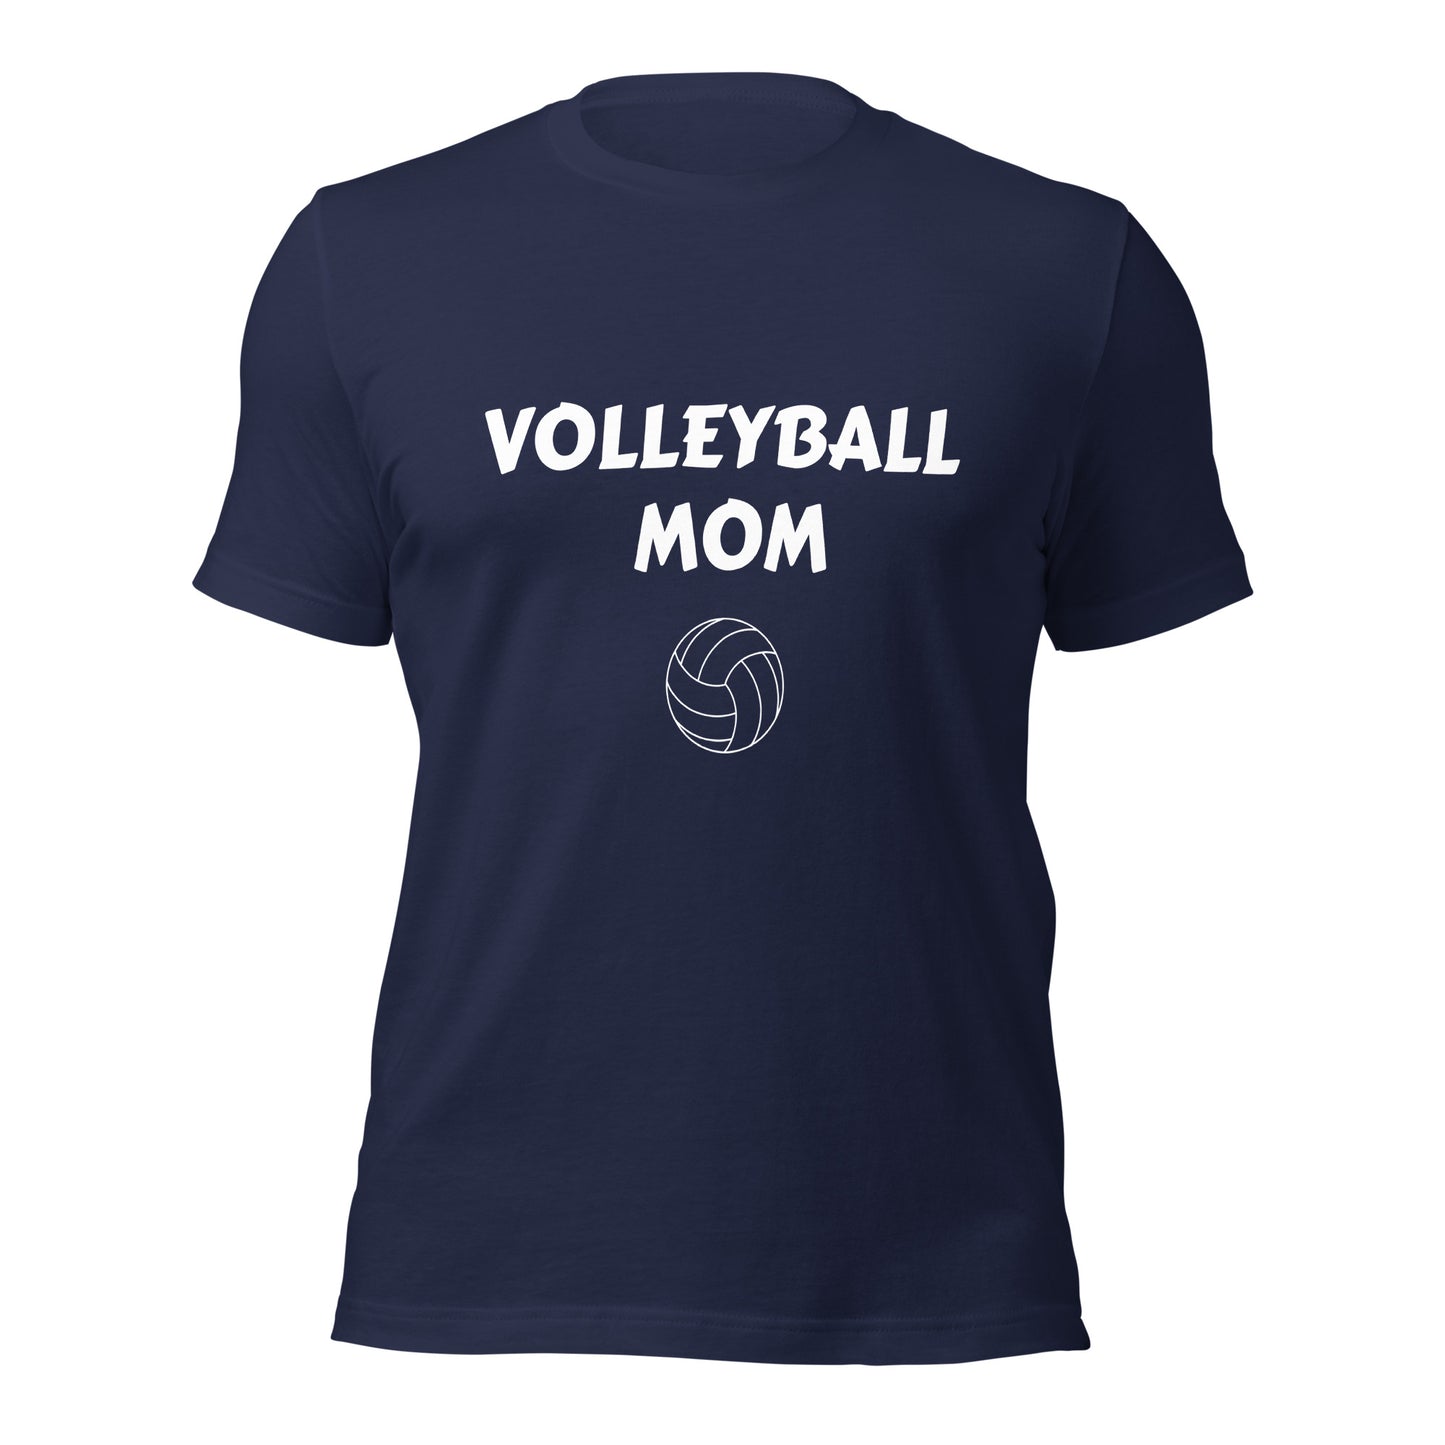 Volleyball Mom Printed Tshirt